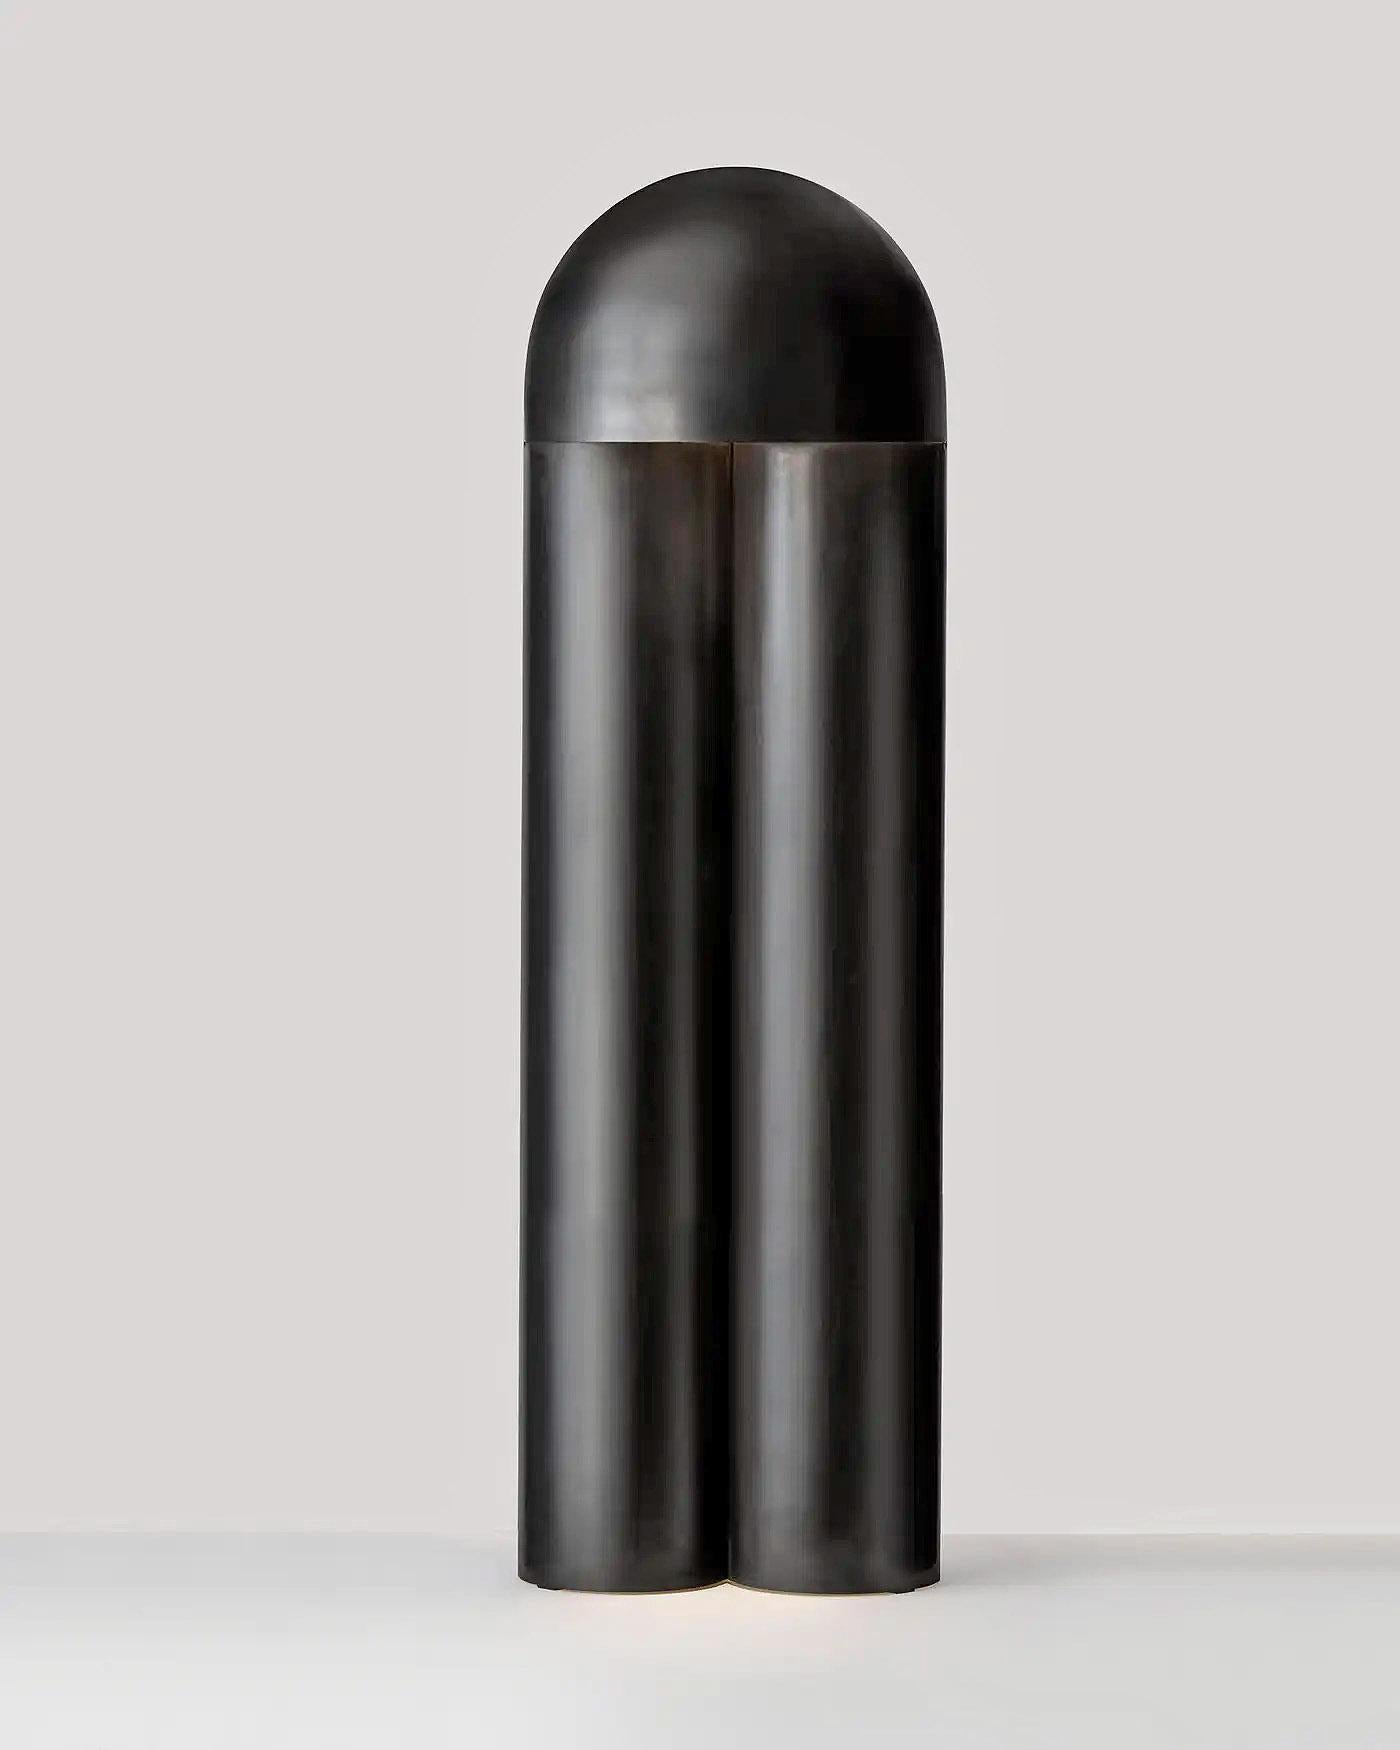 Lampadaire contemporain sculpté en laiton brûlé, Monolith par Paul Matter

La lampe Monolith est un exercice de réduction. Sculptées à partir d'un seul corps à l'aide de simples partitions et de plis, la géométrie des lampes, la texture de la